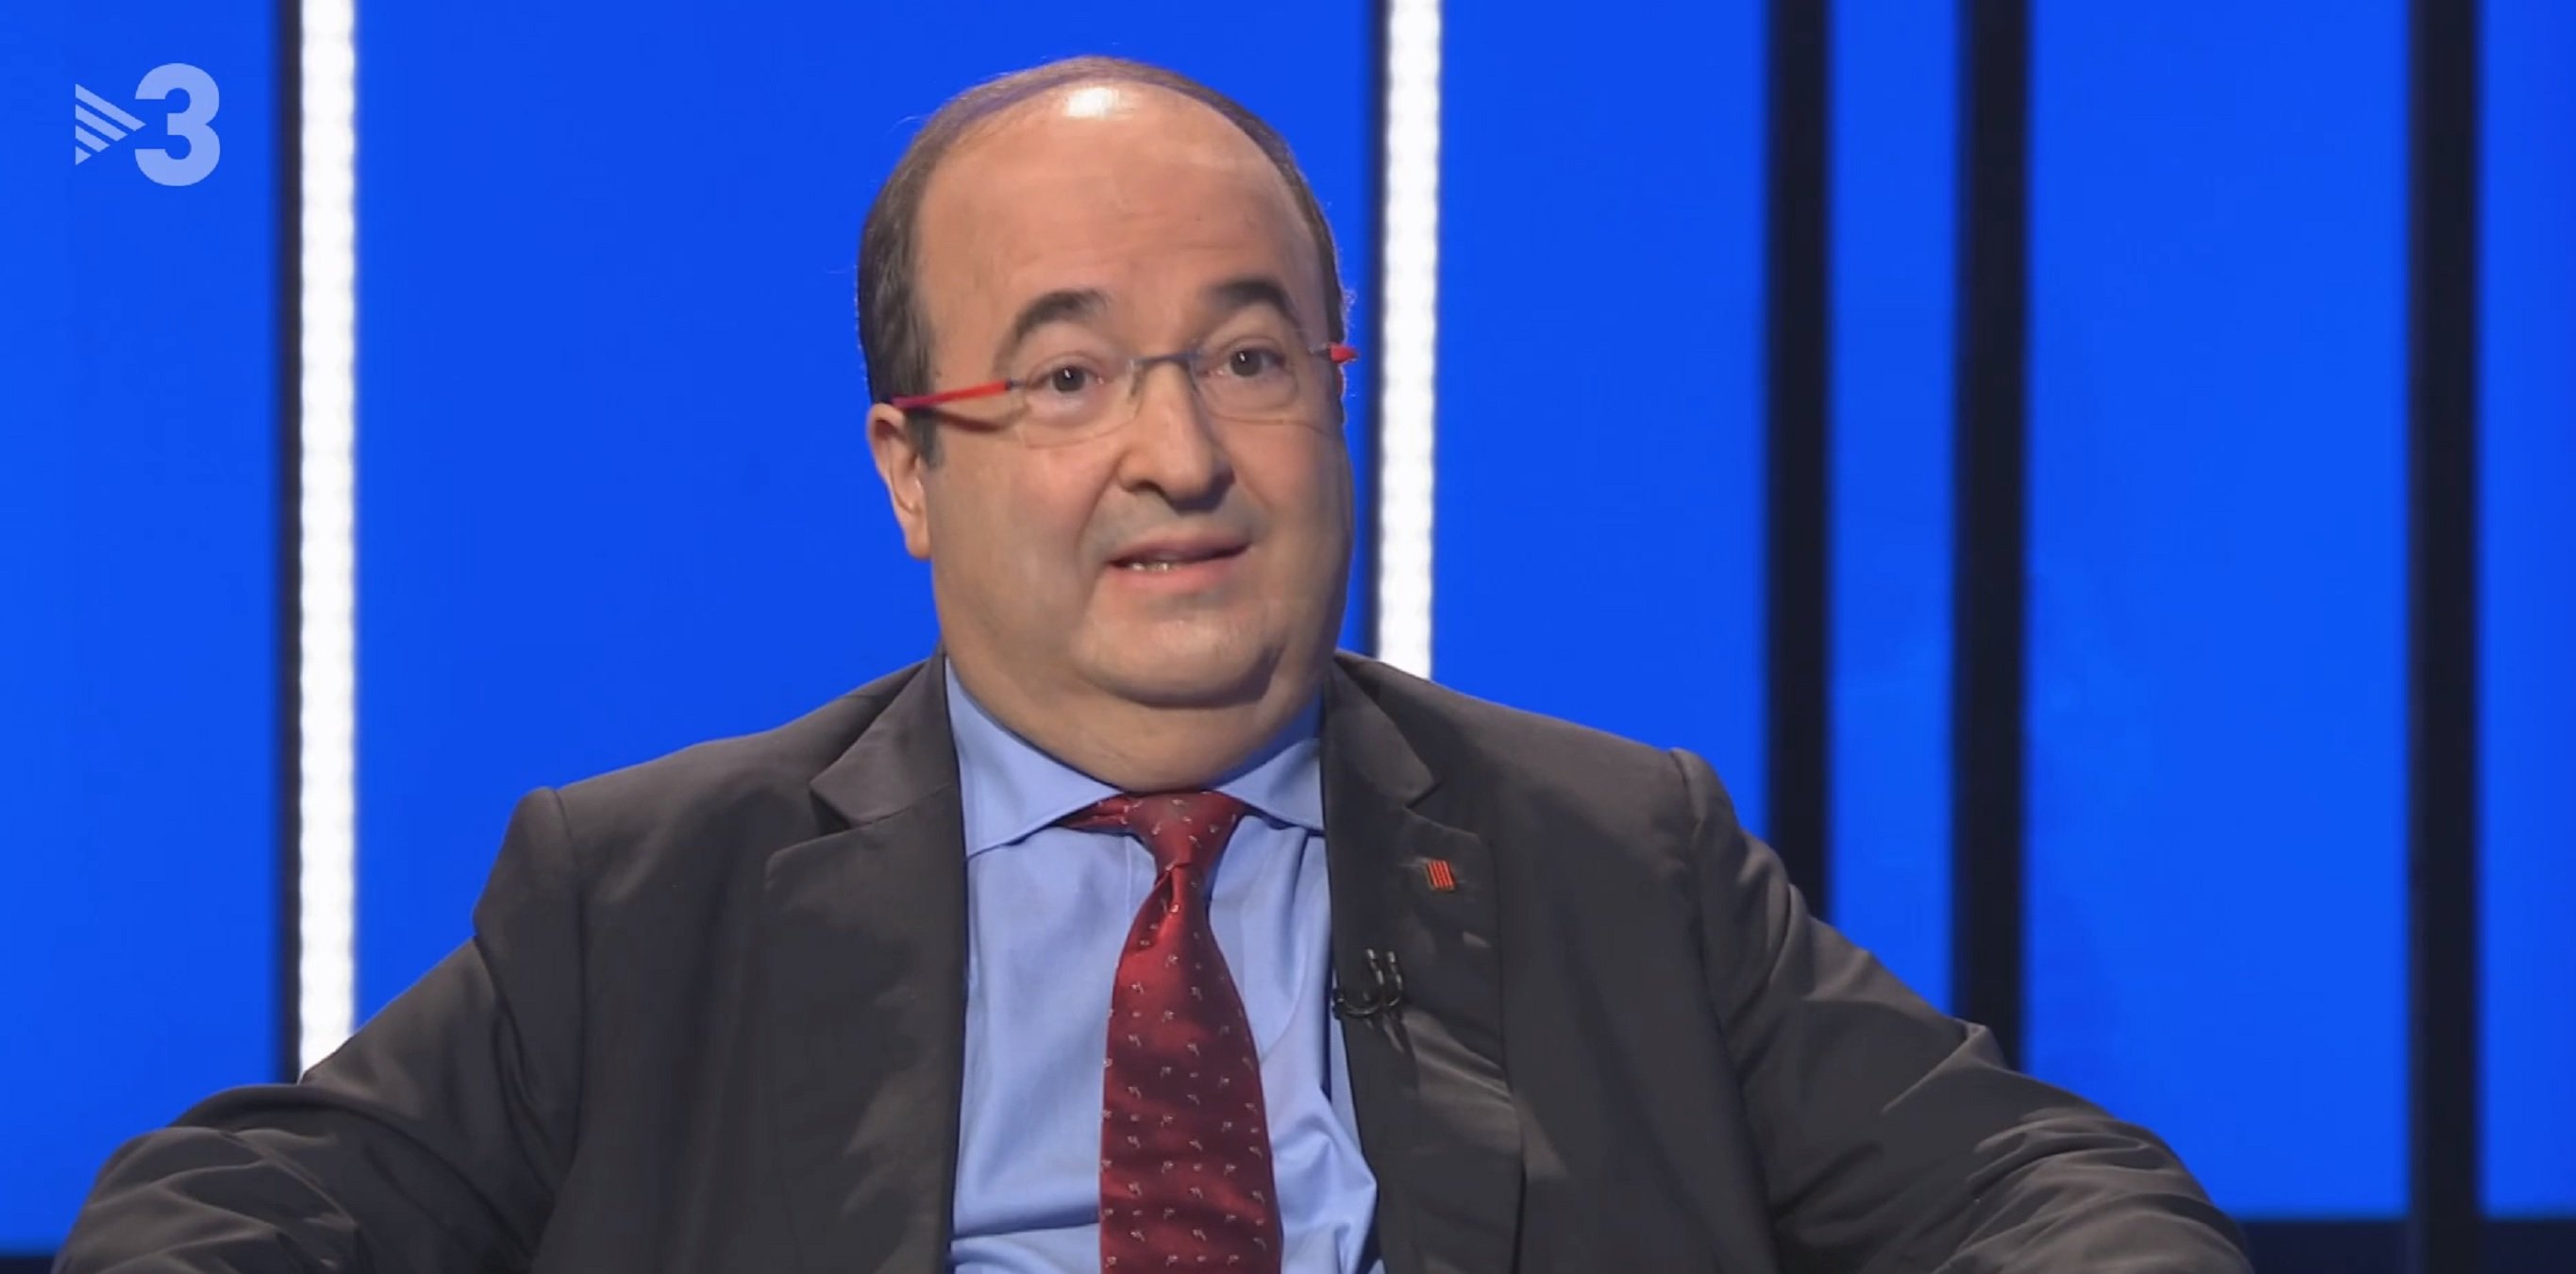 Miquel Iceta ensorra l'audiència de TV3 a una xifra ridícula d'espectadors